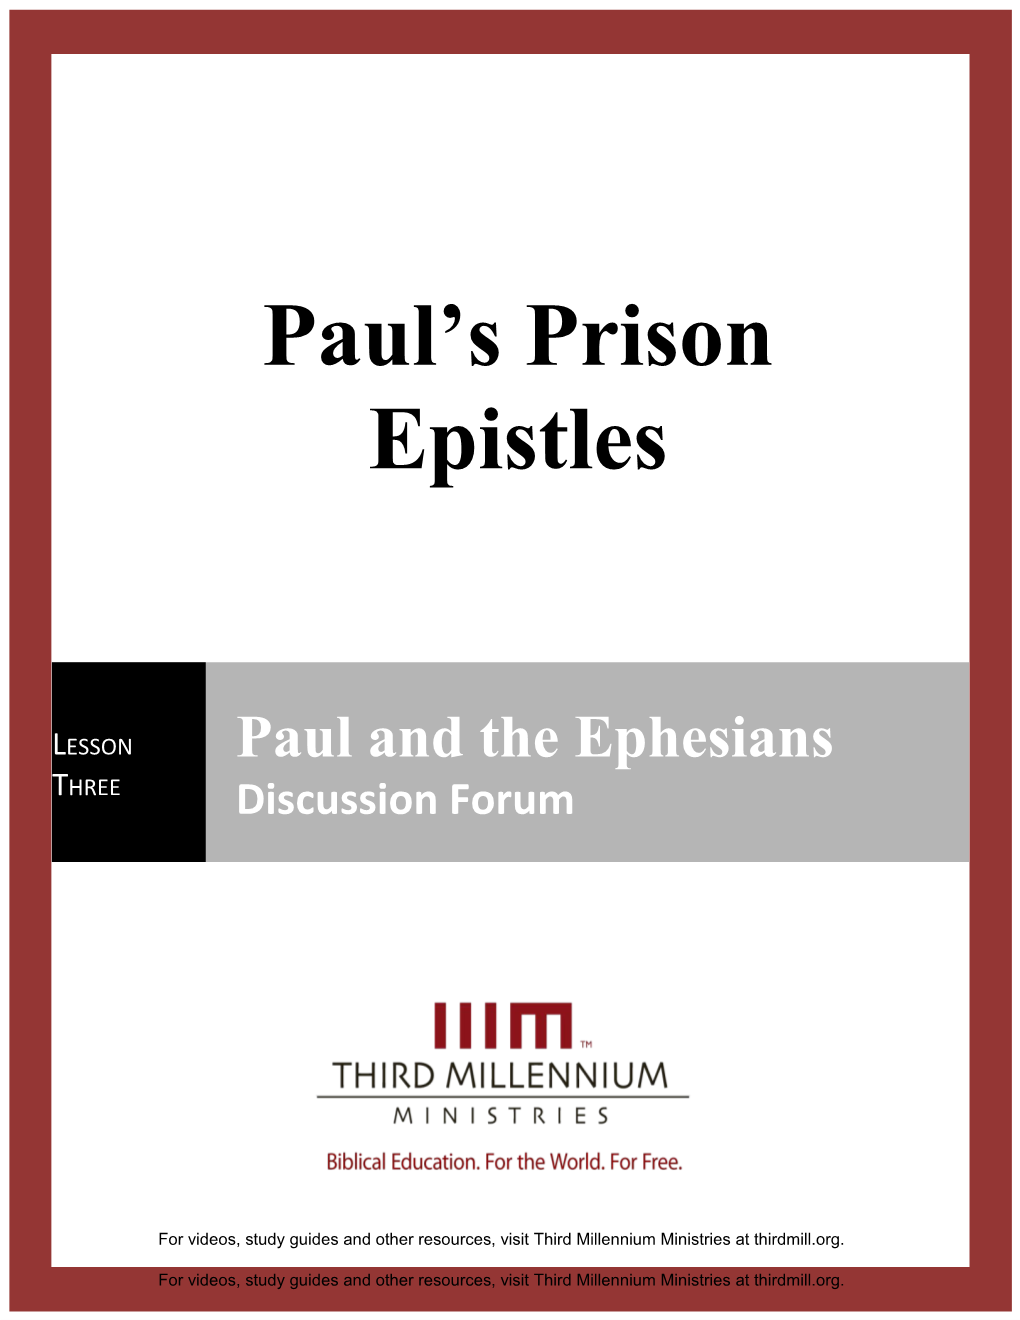 Paul's Prison Epistles Lesson 3 Discussion Forum